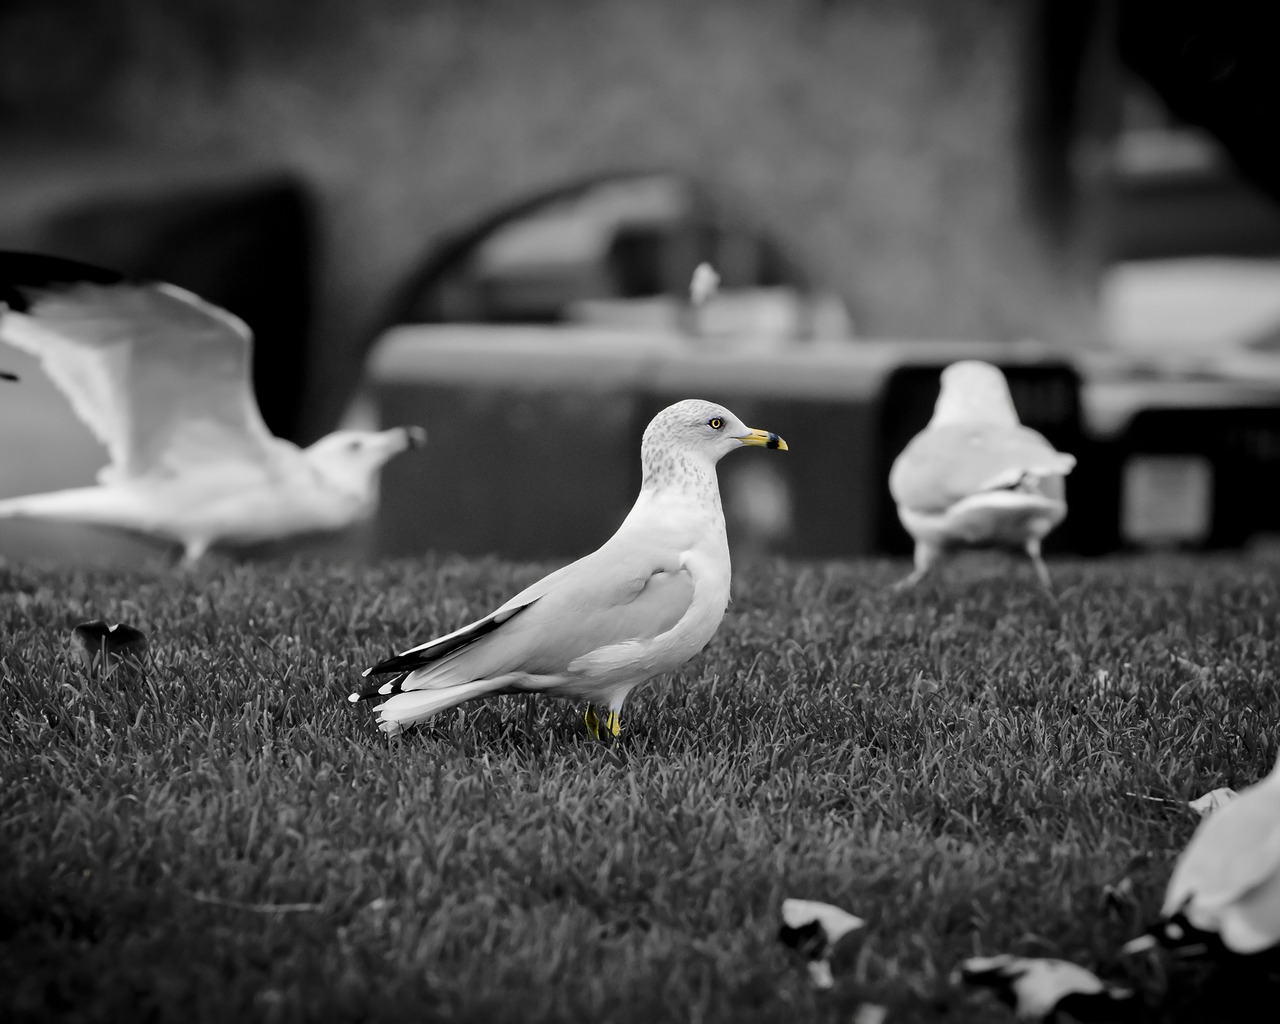 White doves for 1280 x 1024 resolution